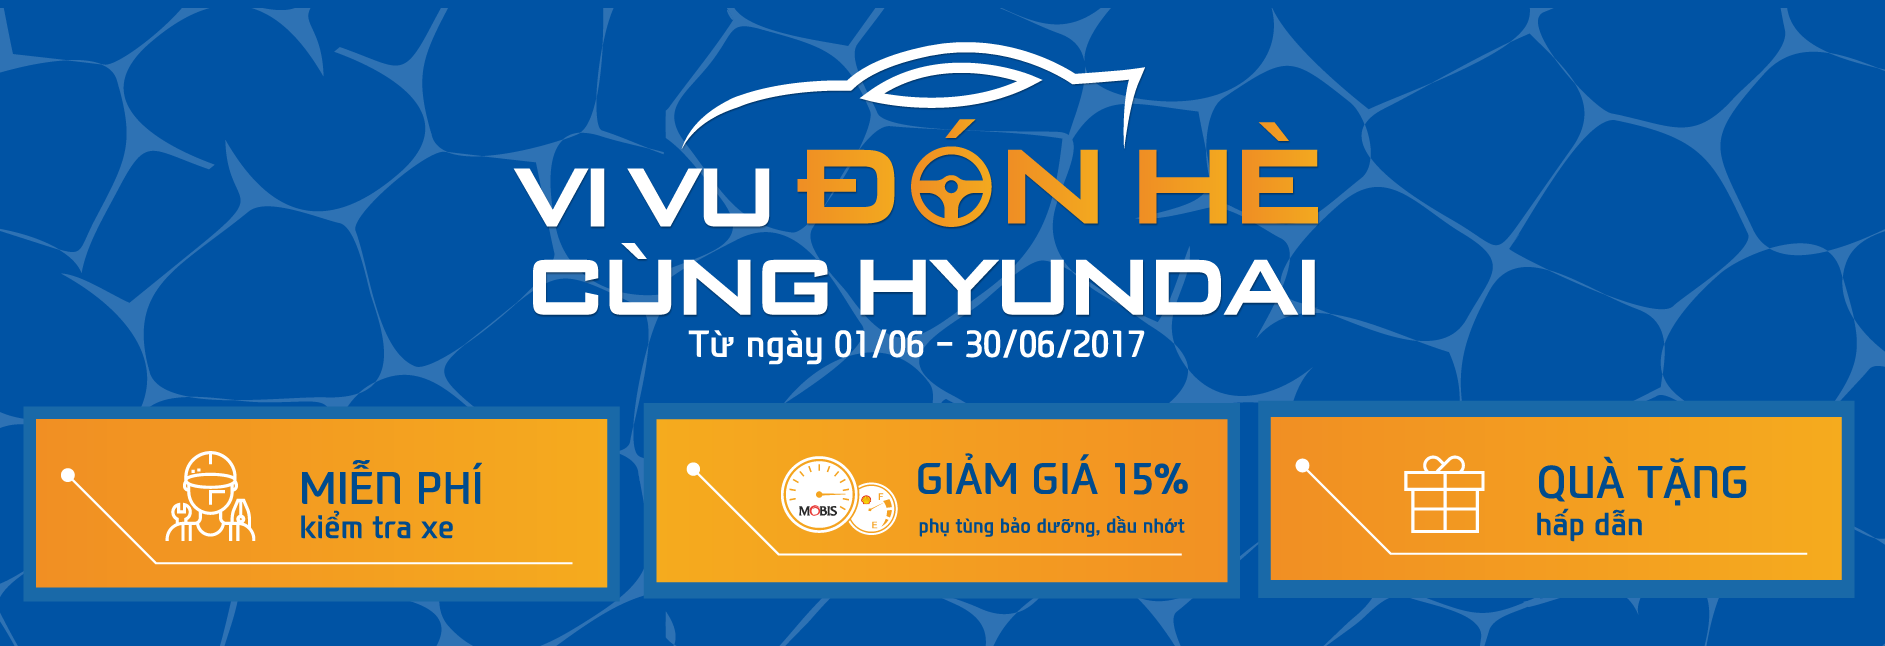 Khuyến mại Dịch vụ Hè 2017 “Vi vu đón hè cùng Hyundai”